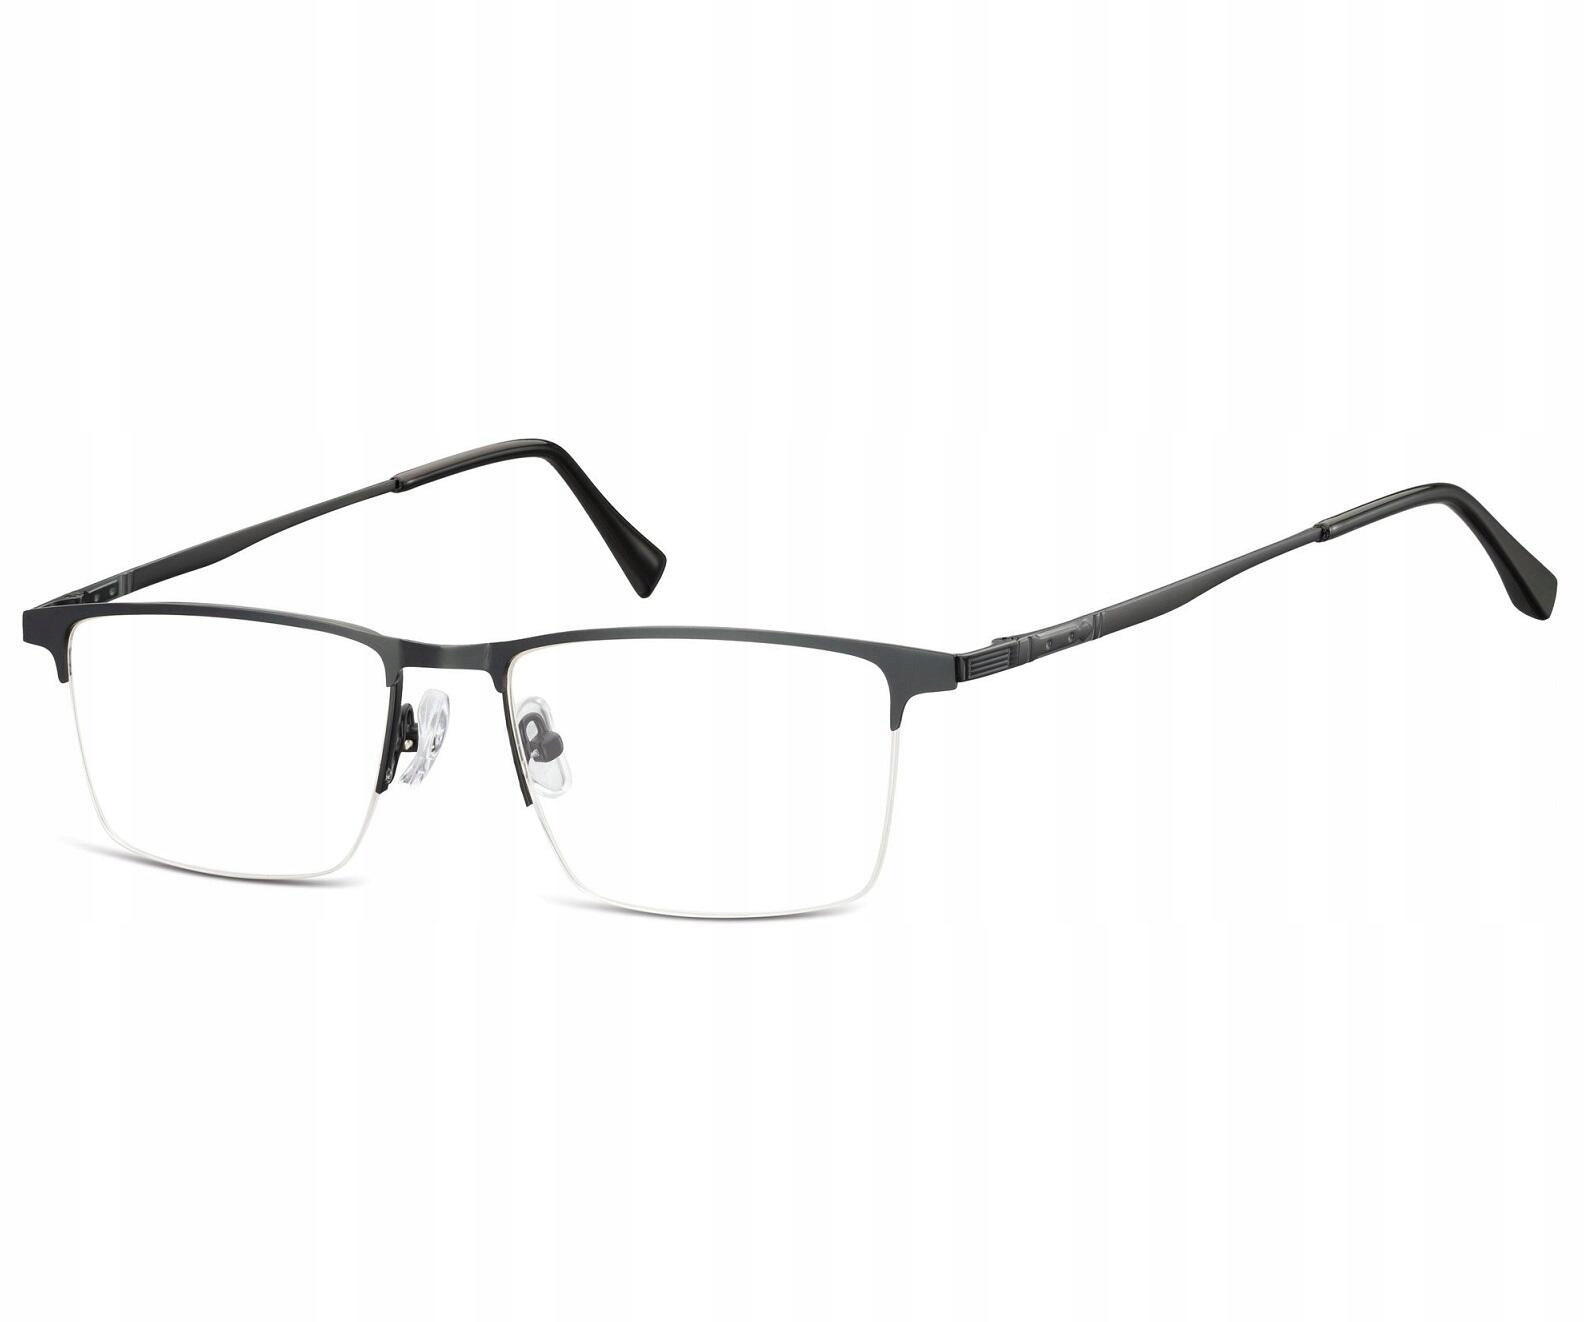 Прямоугольные очки для коррекции линии длина дужки 145 мм